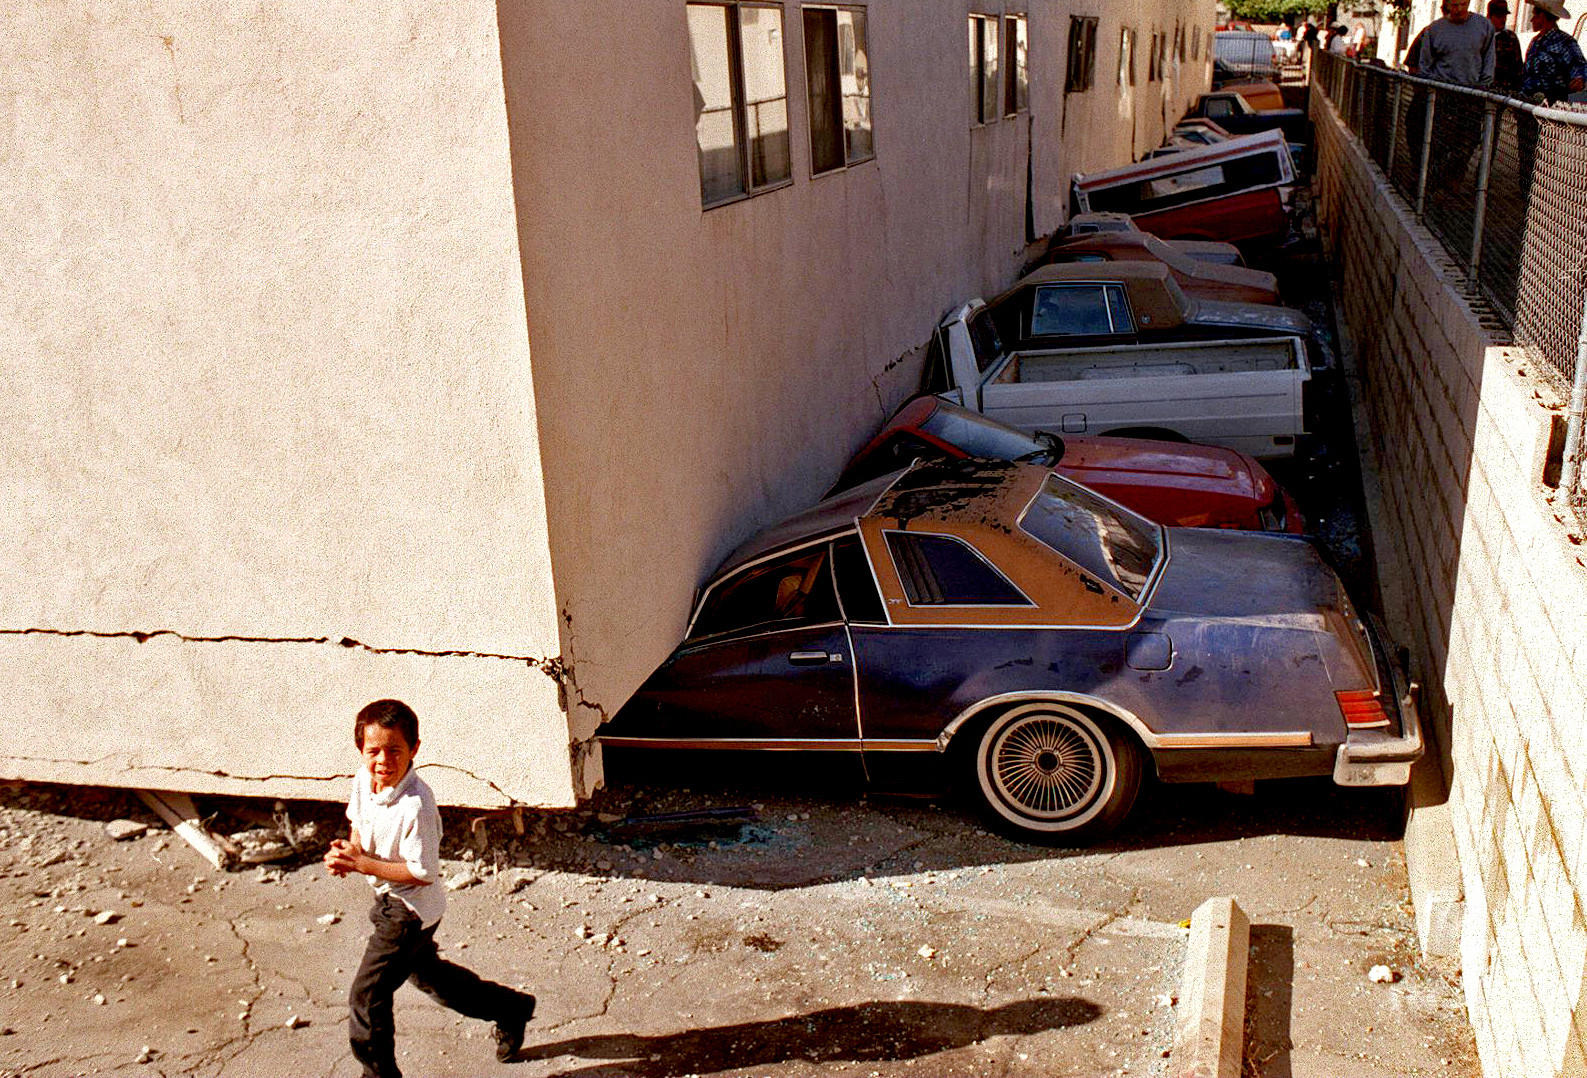 The Northridge earthquake of 1994